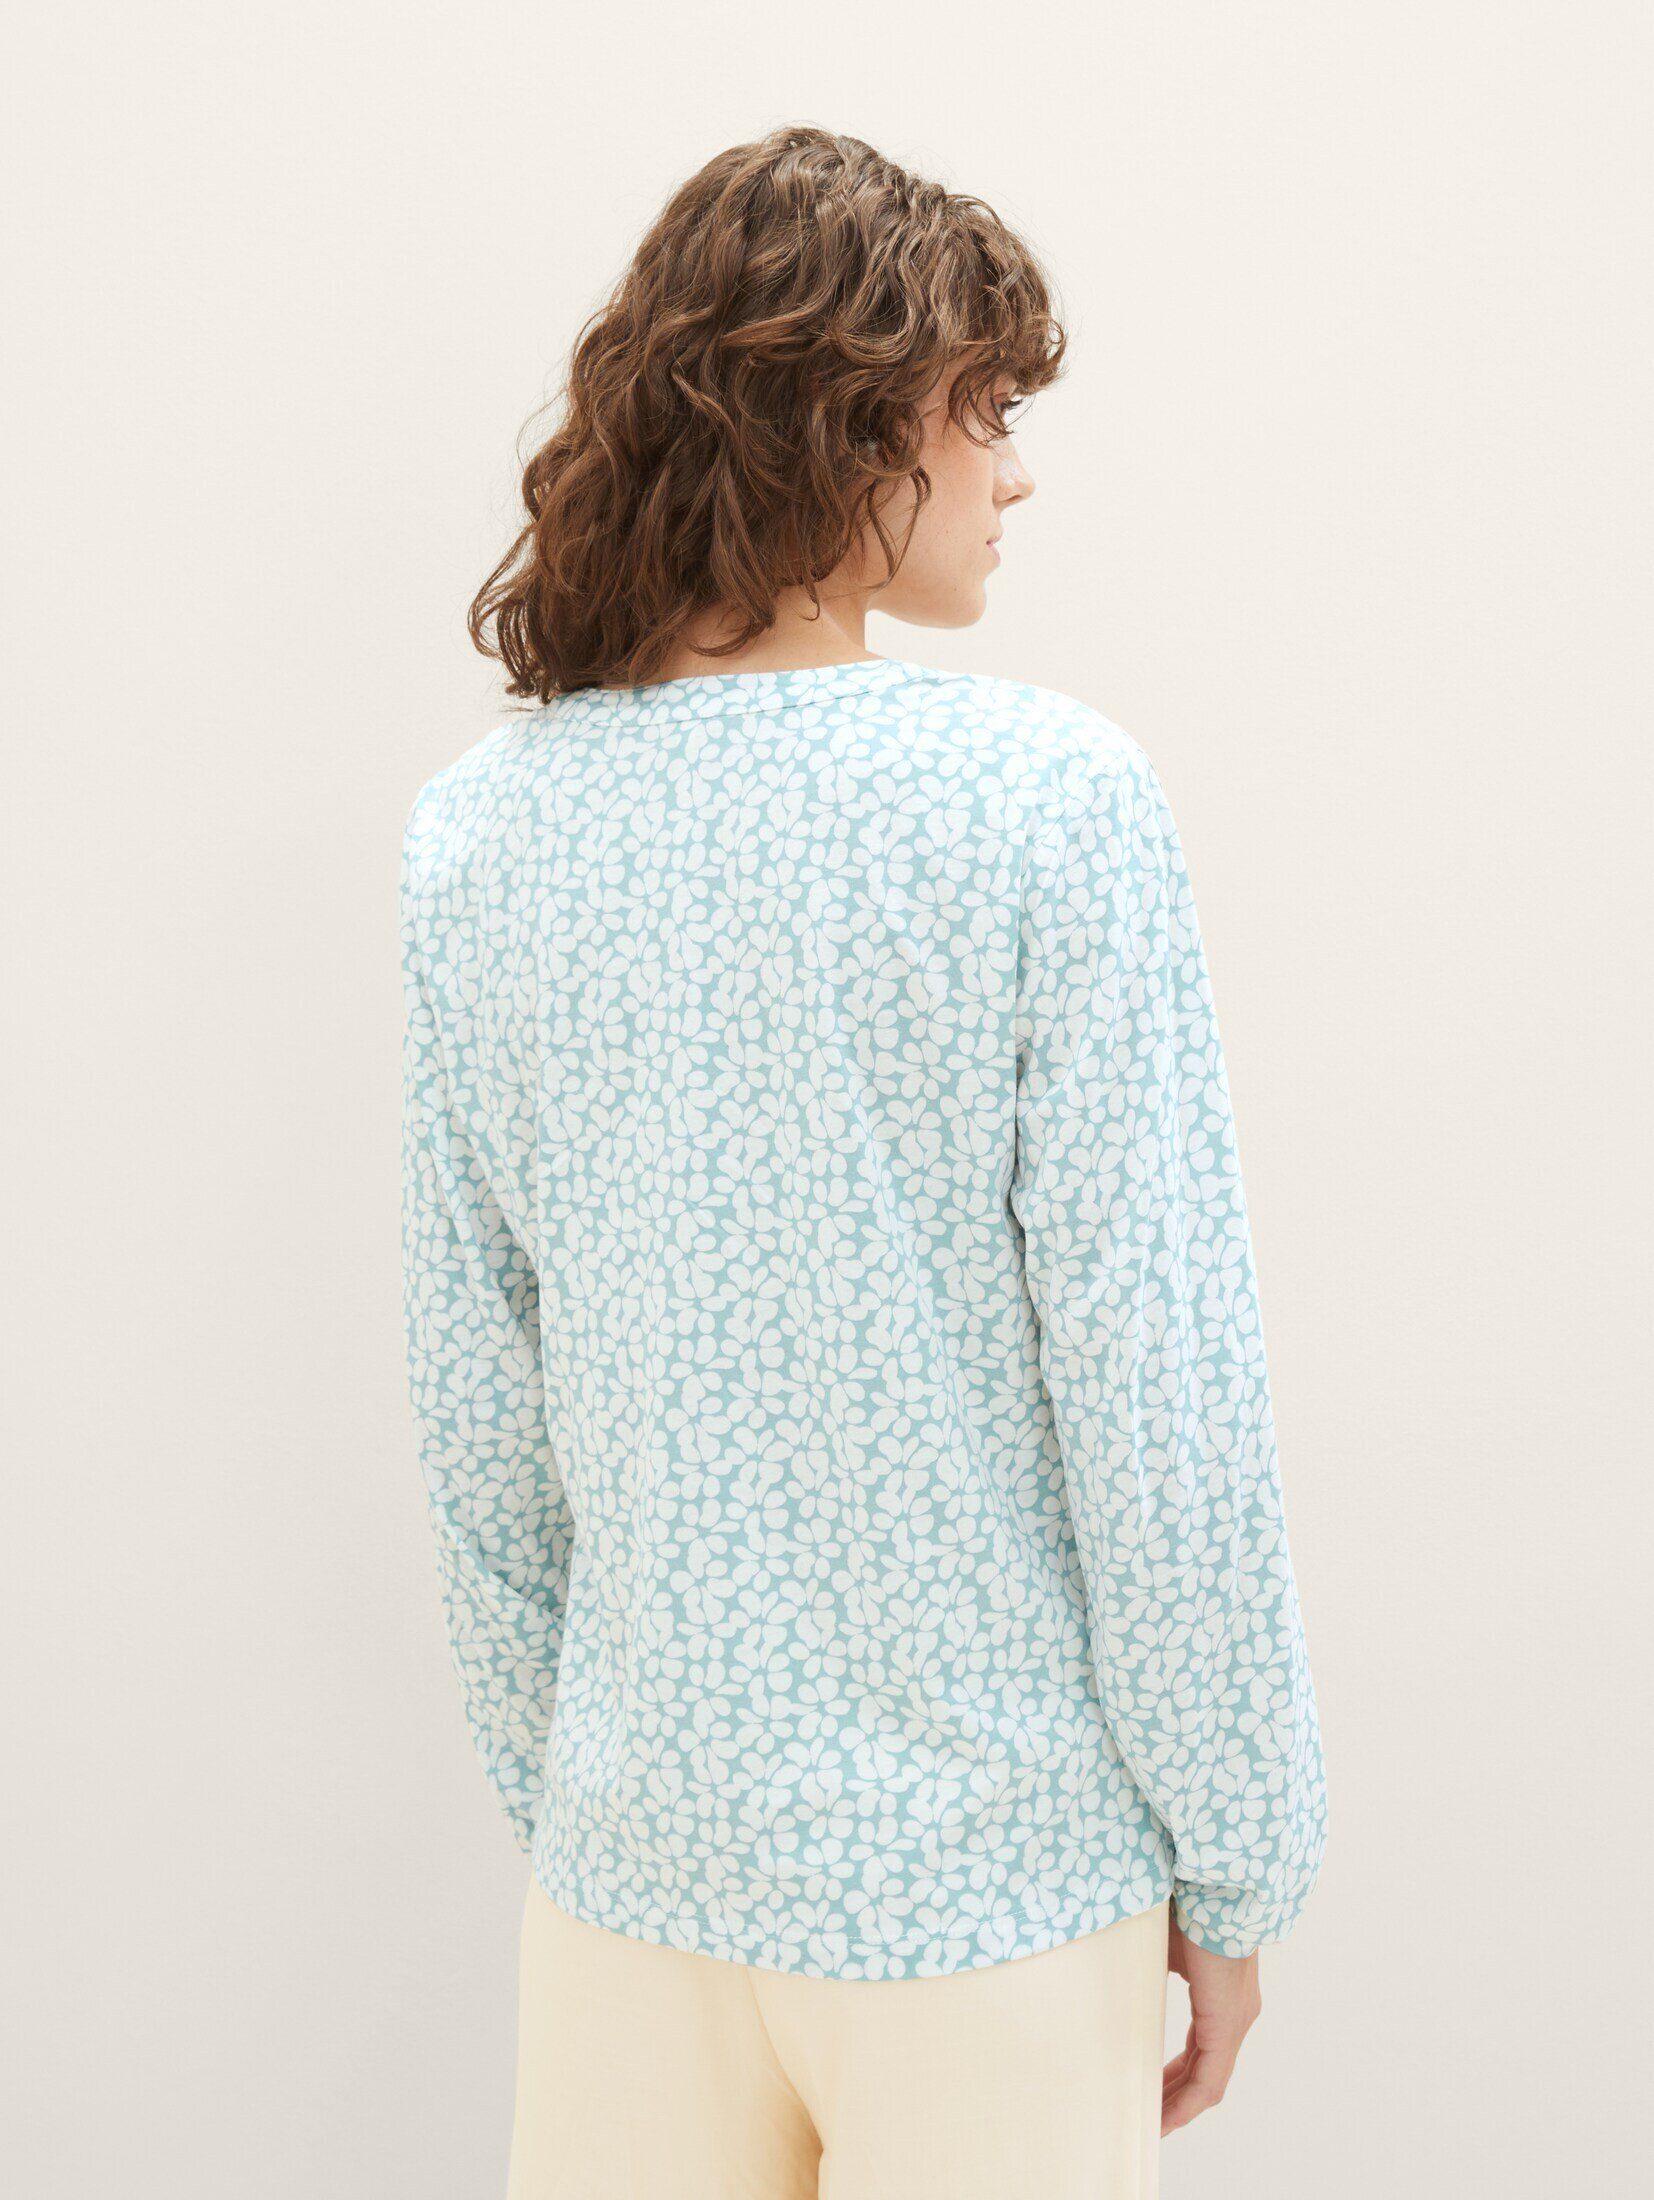 TAILOR Bluse TOM teal T-Shirt Allover-Print floral design mit